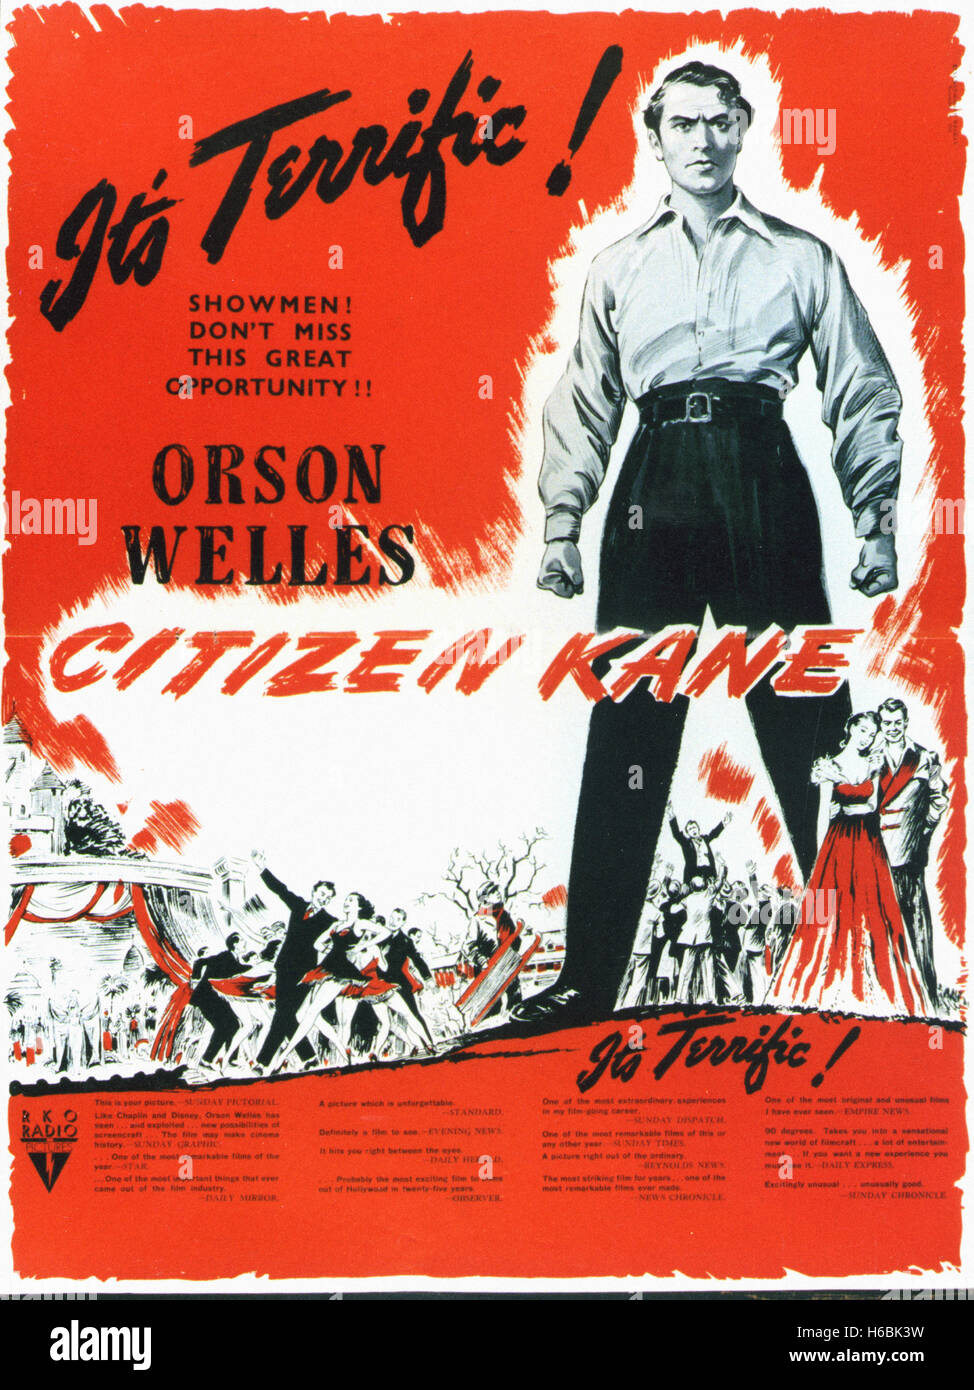 Citizen Kane - Movie Poster Stock Photo - Alamy